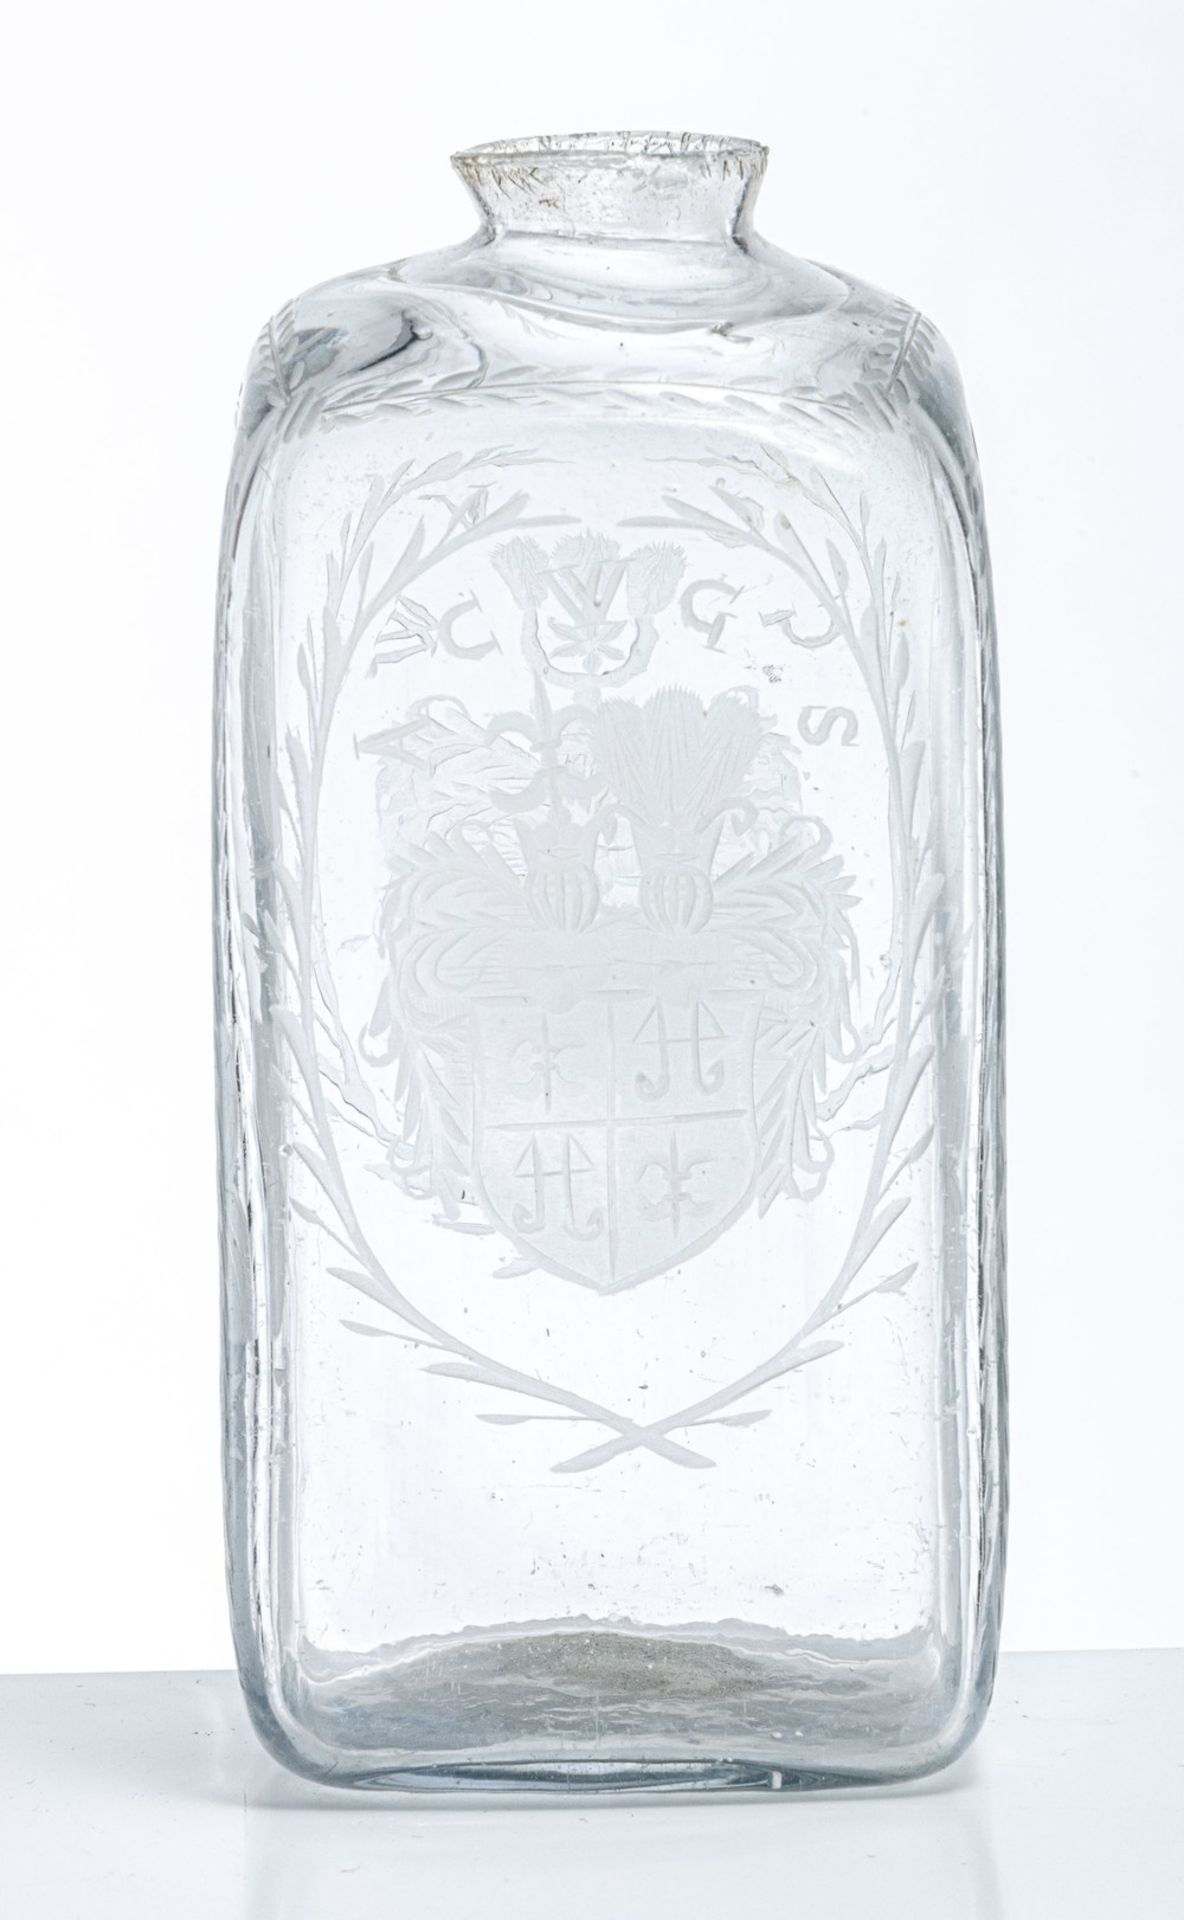 Flasche mit Wappen "von Warnsdorf" und "von Salza" Böhmen oder Sachsen, um 1700 - Bild 2 aus 4